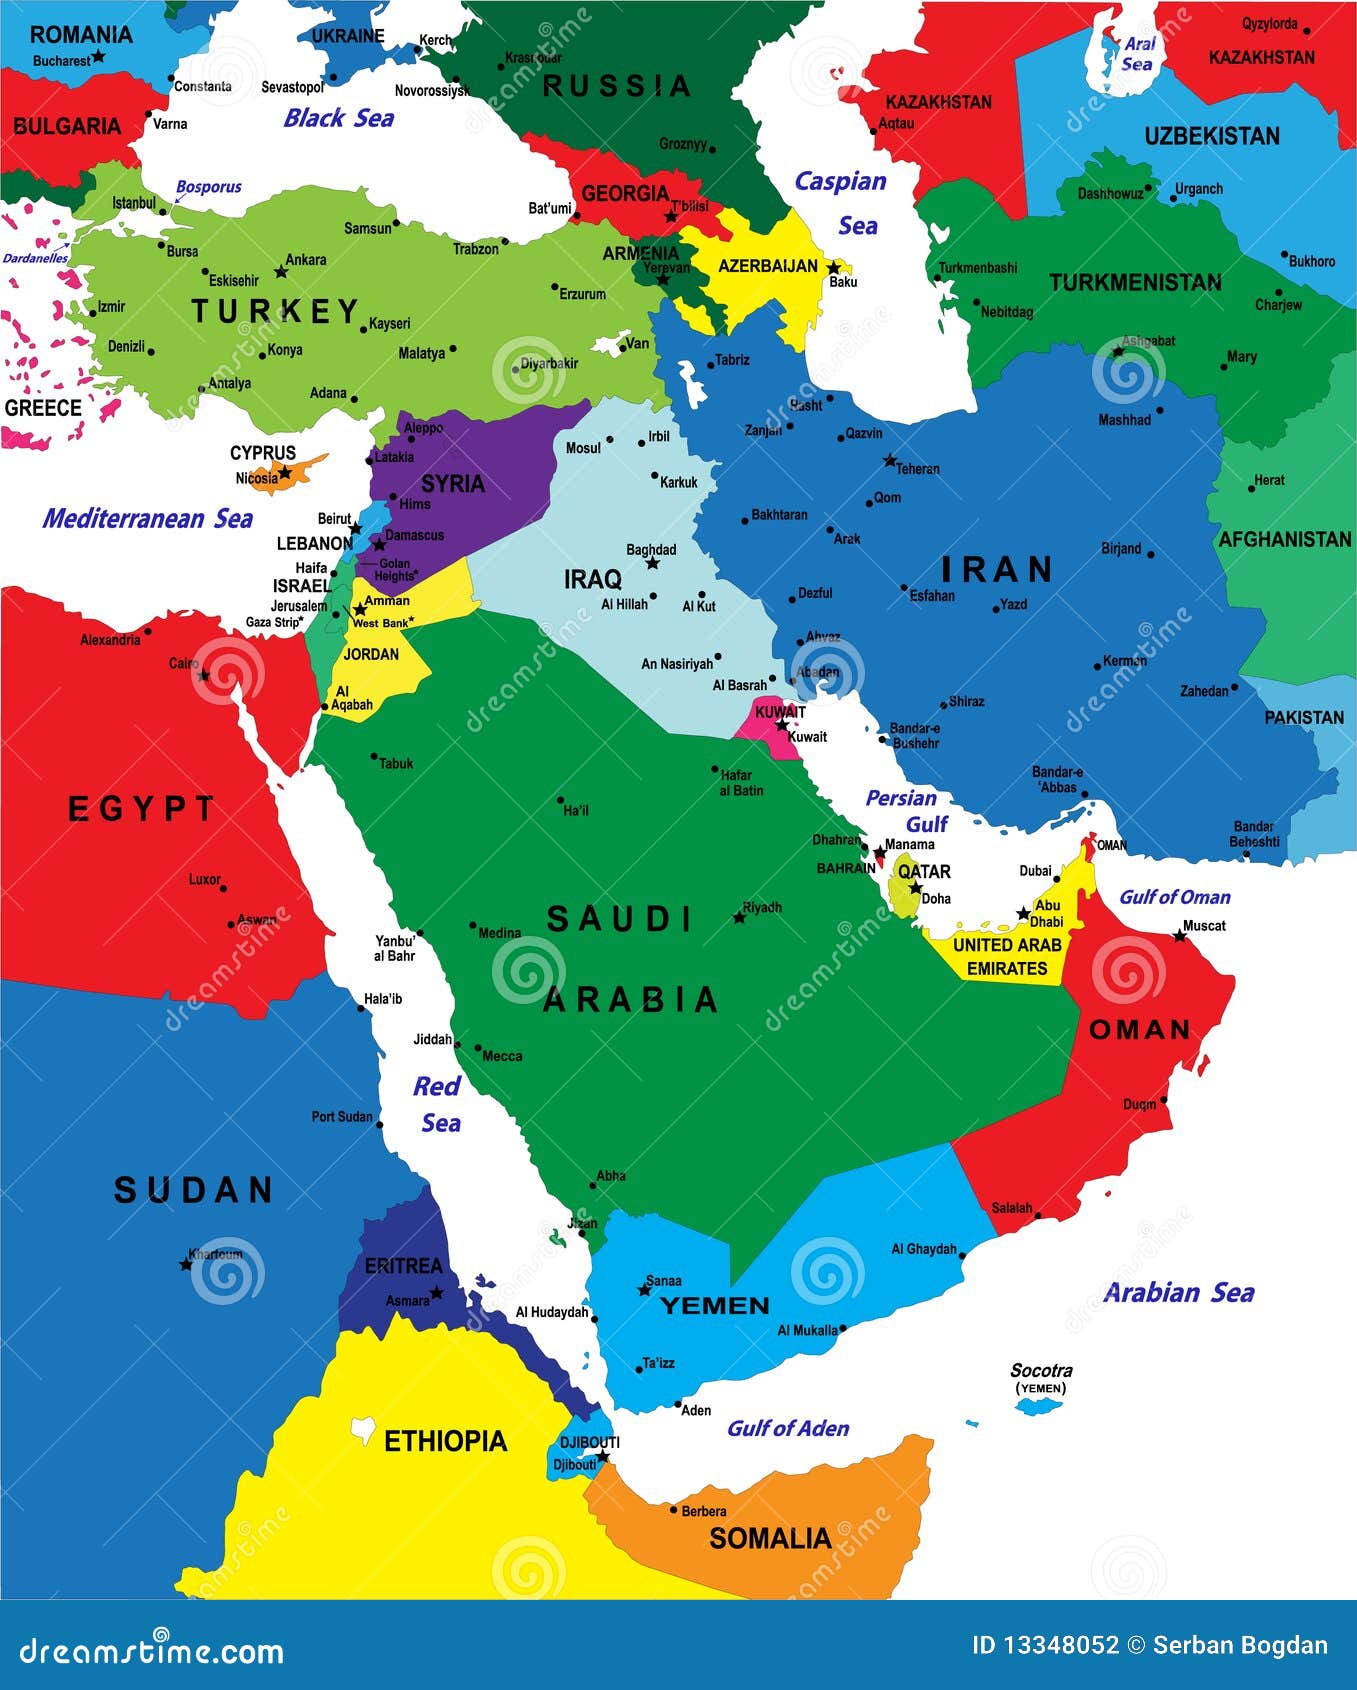 Подробная карта востока. Политическая карта ближнего Востока. Карта Сирии Турции Ирака Ирана Израиля. Политическая карта ближнего Востока 2022.